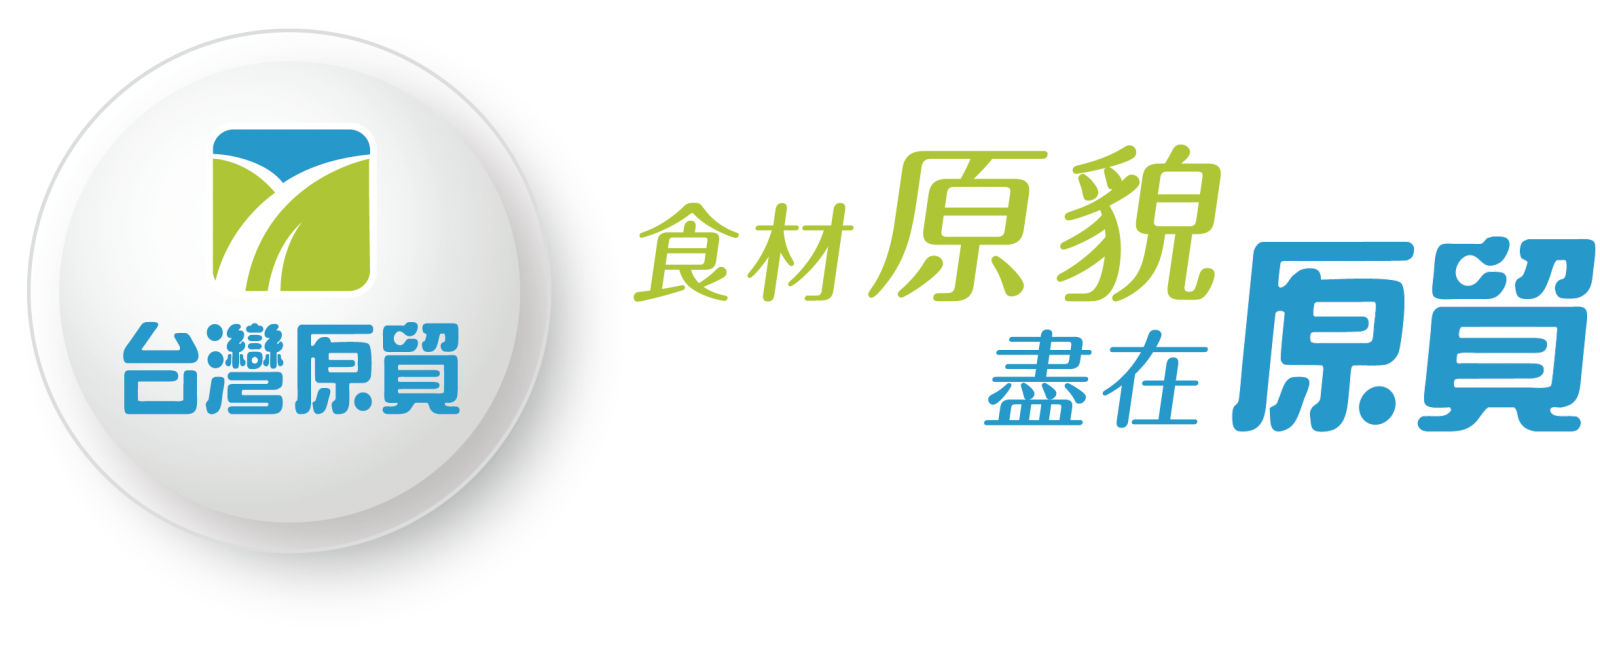 yuanmou_logo